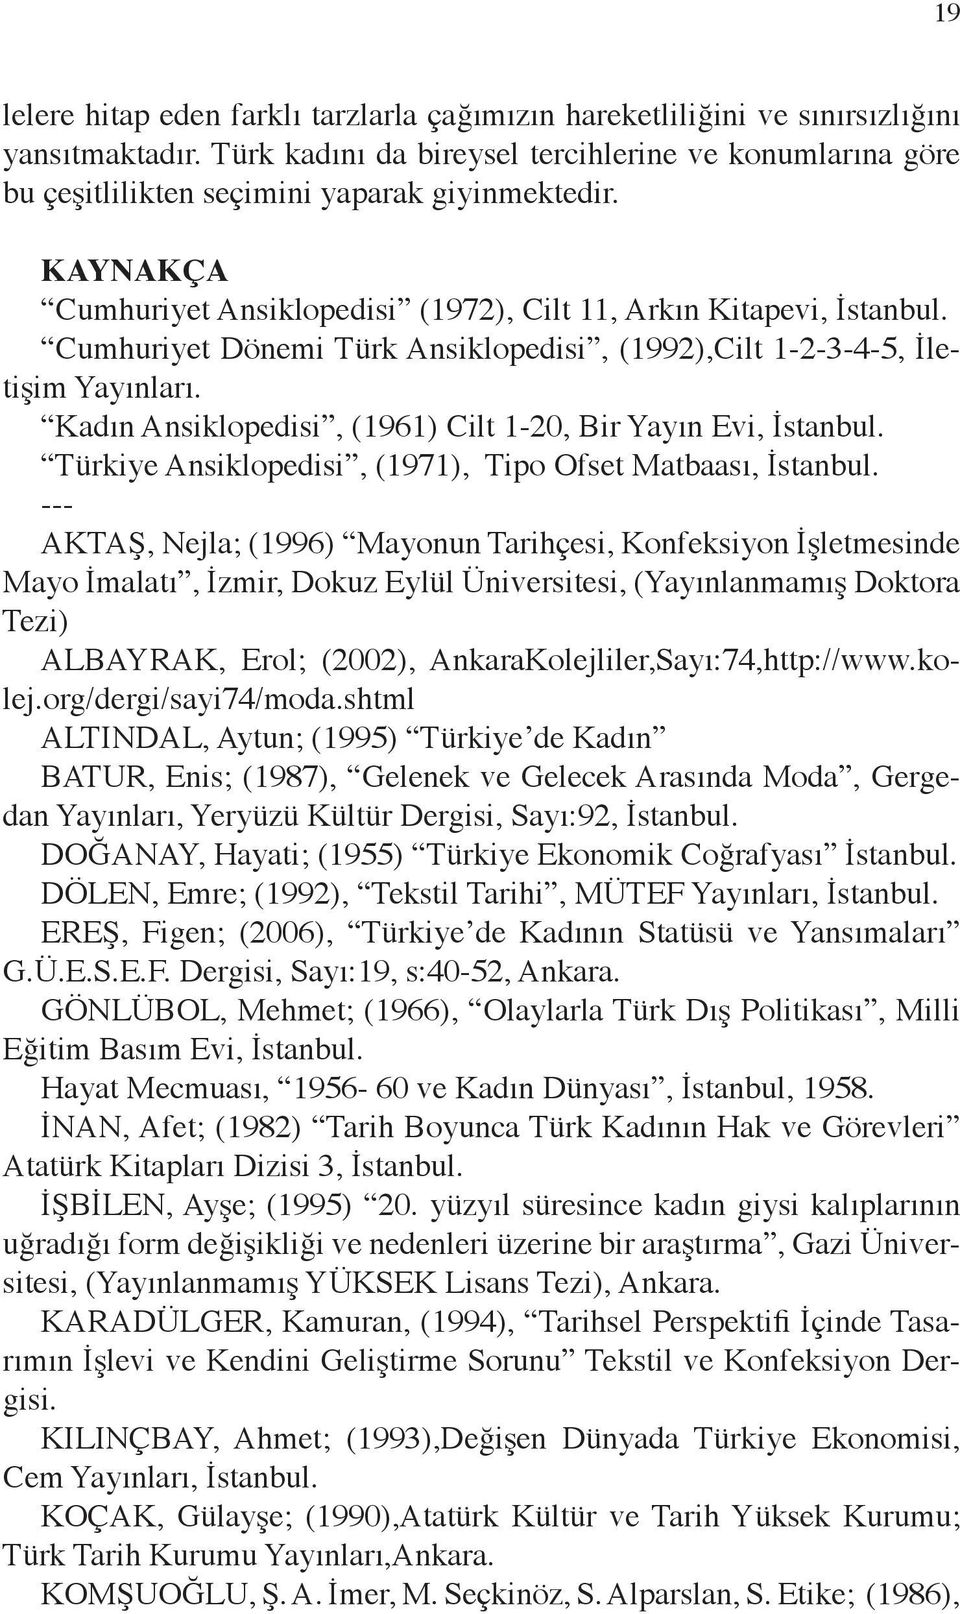 Cumhuriyet Dönemi Türk Ansiklopedisi, (1992),Cilt 1-2-3-4-5, İletişim Yayınları. Kadın Ansiklopedisi, (1961) Cilt 1-20, Bir Yayın Evi, İstanbul.